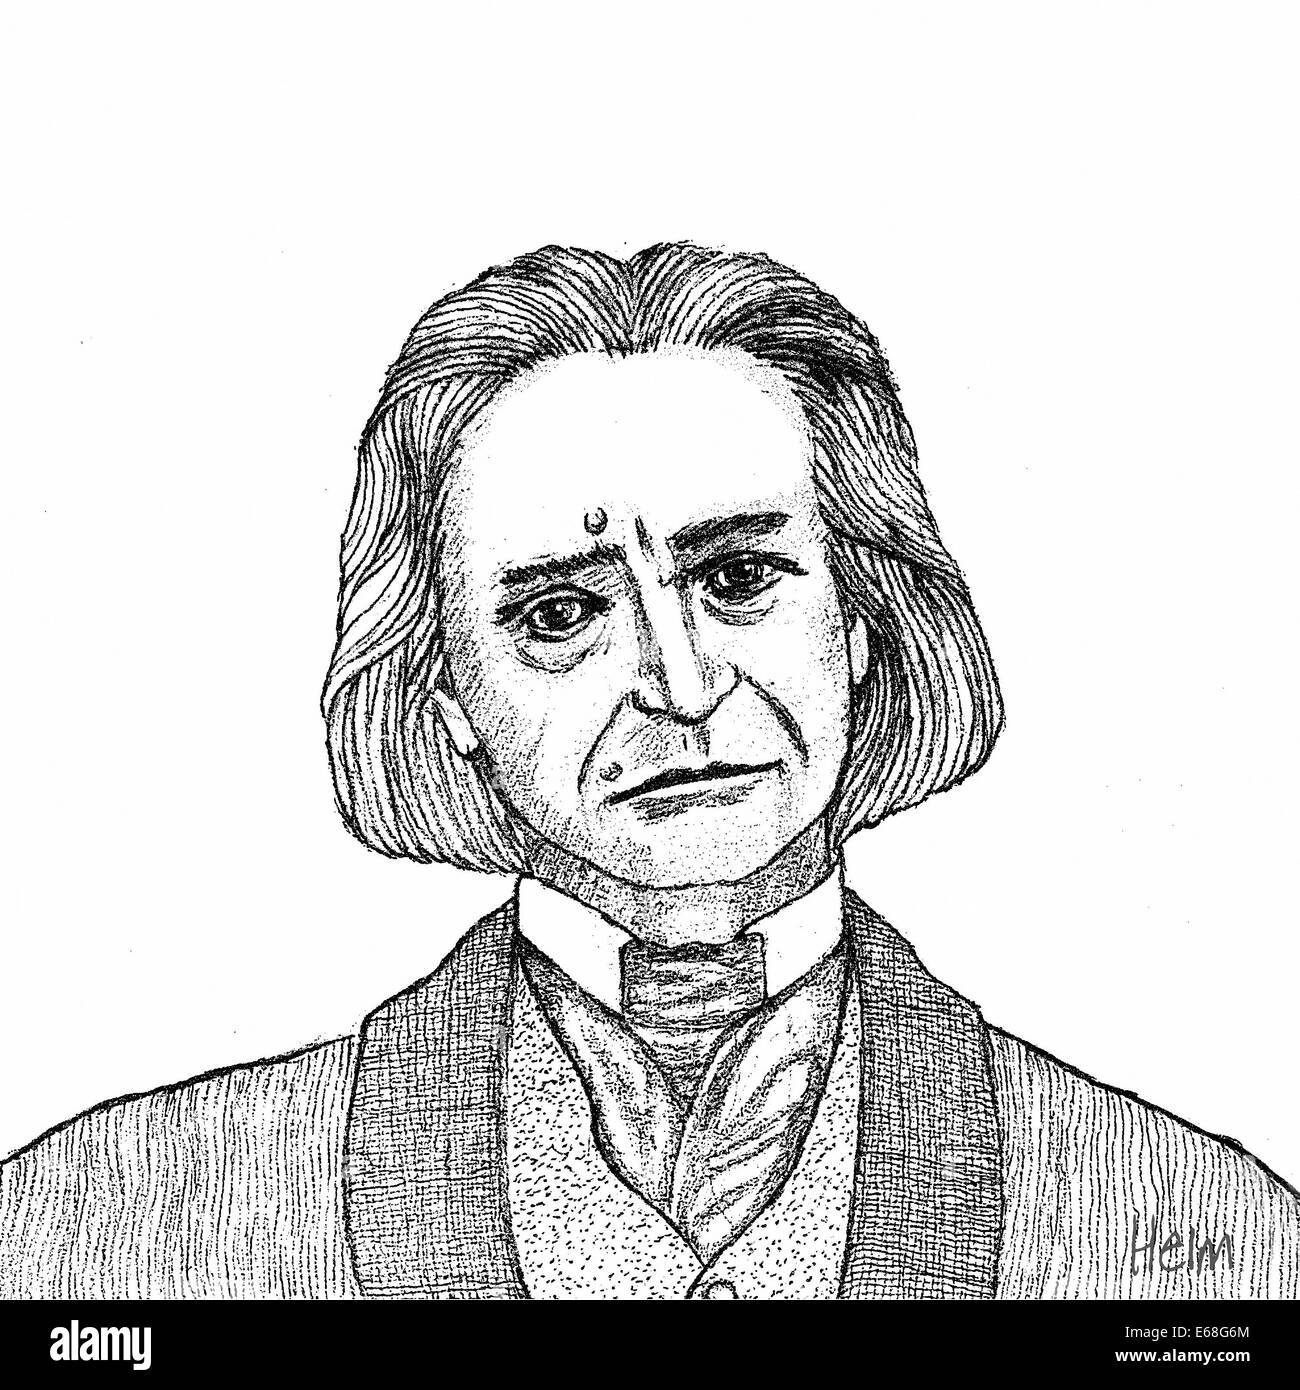 Portrait de Franz Liszt, compositeur hongrois, 1811 - 1886 Banque D'Images